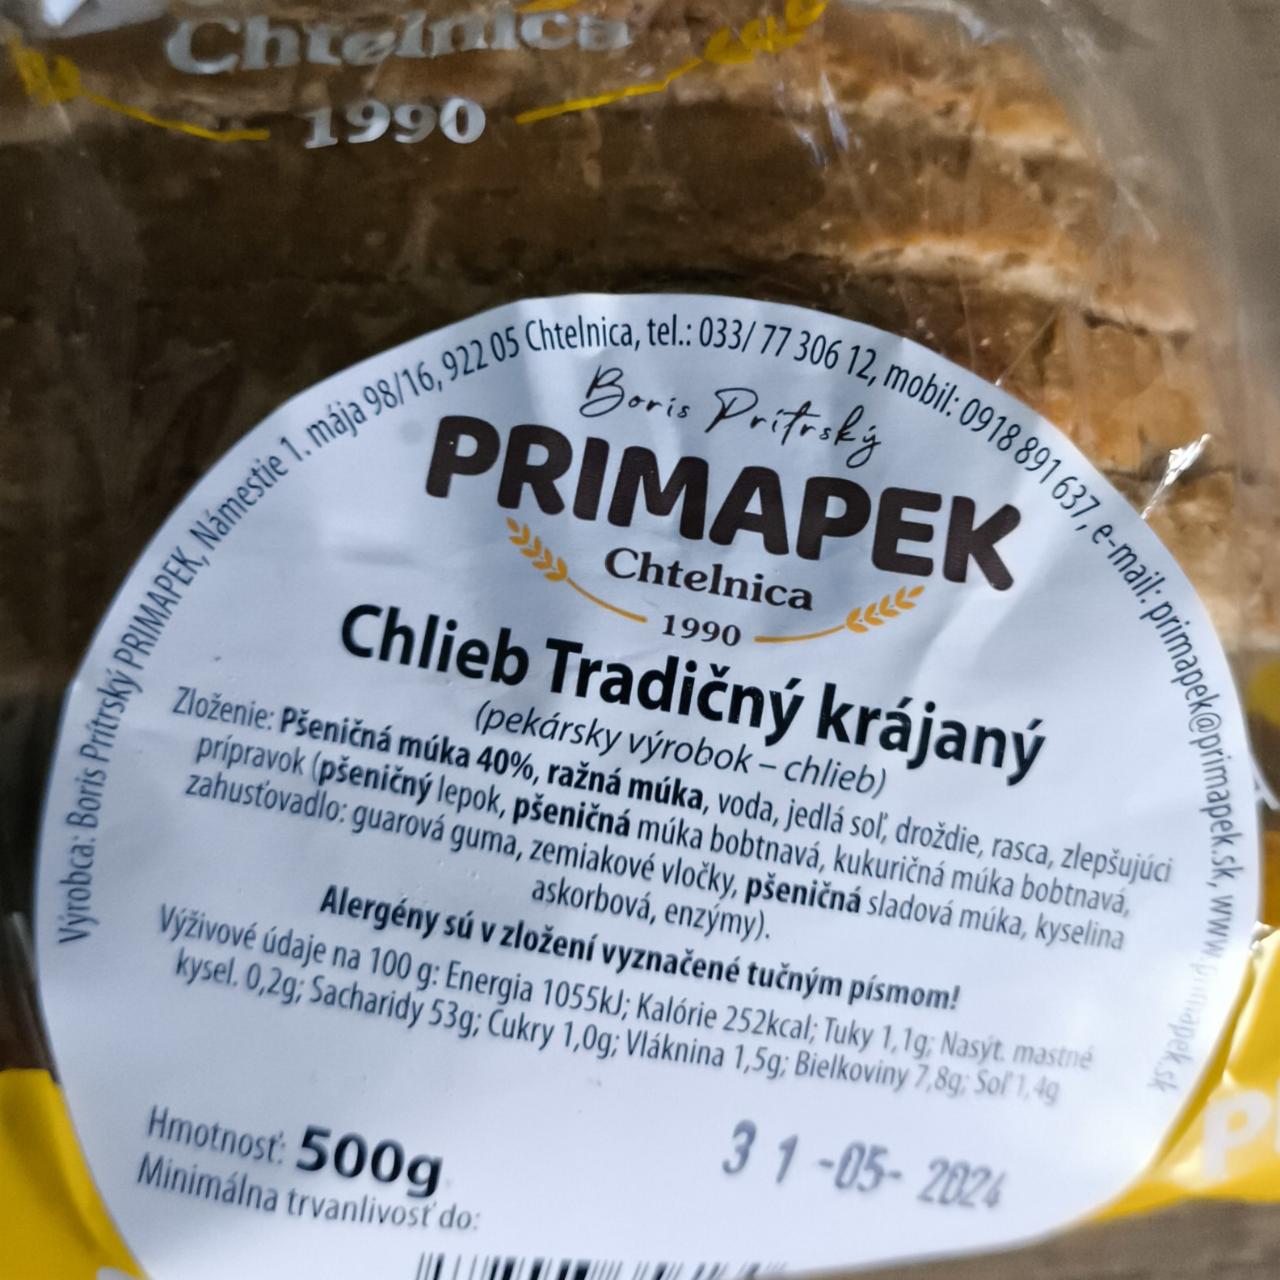 Fotografie - Chlieb tradičný krájaný primapek